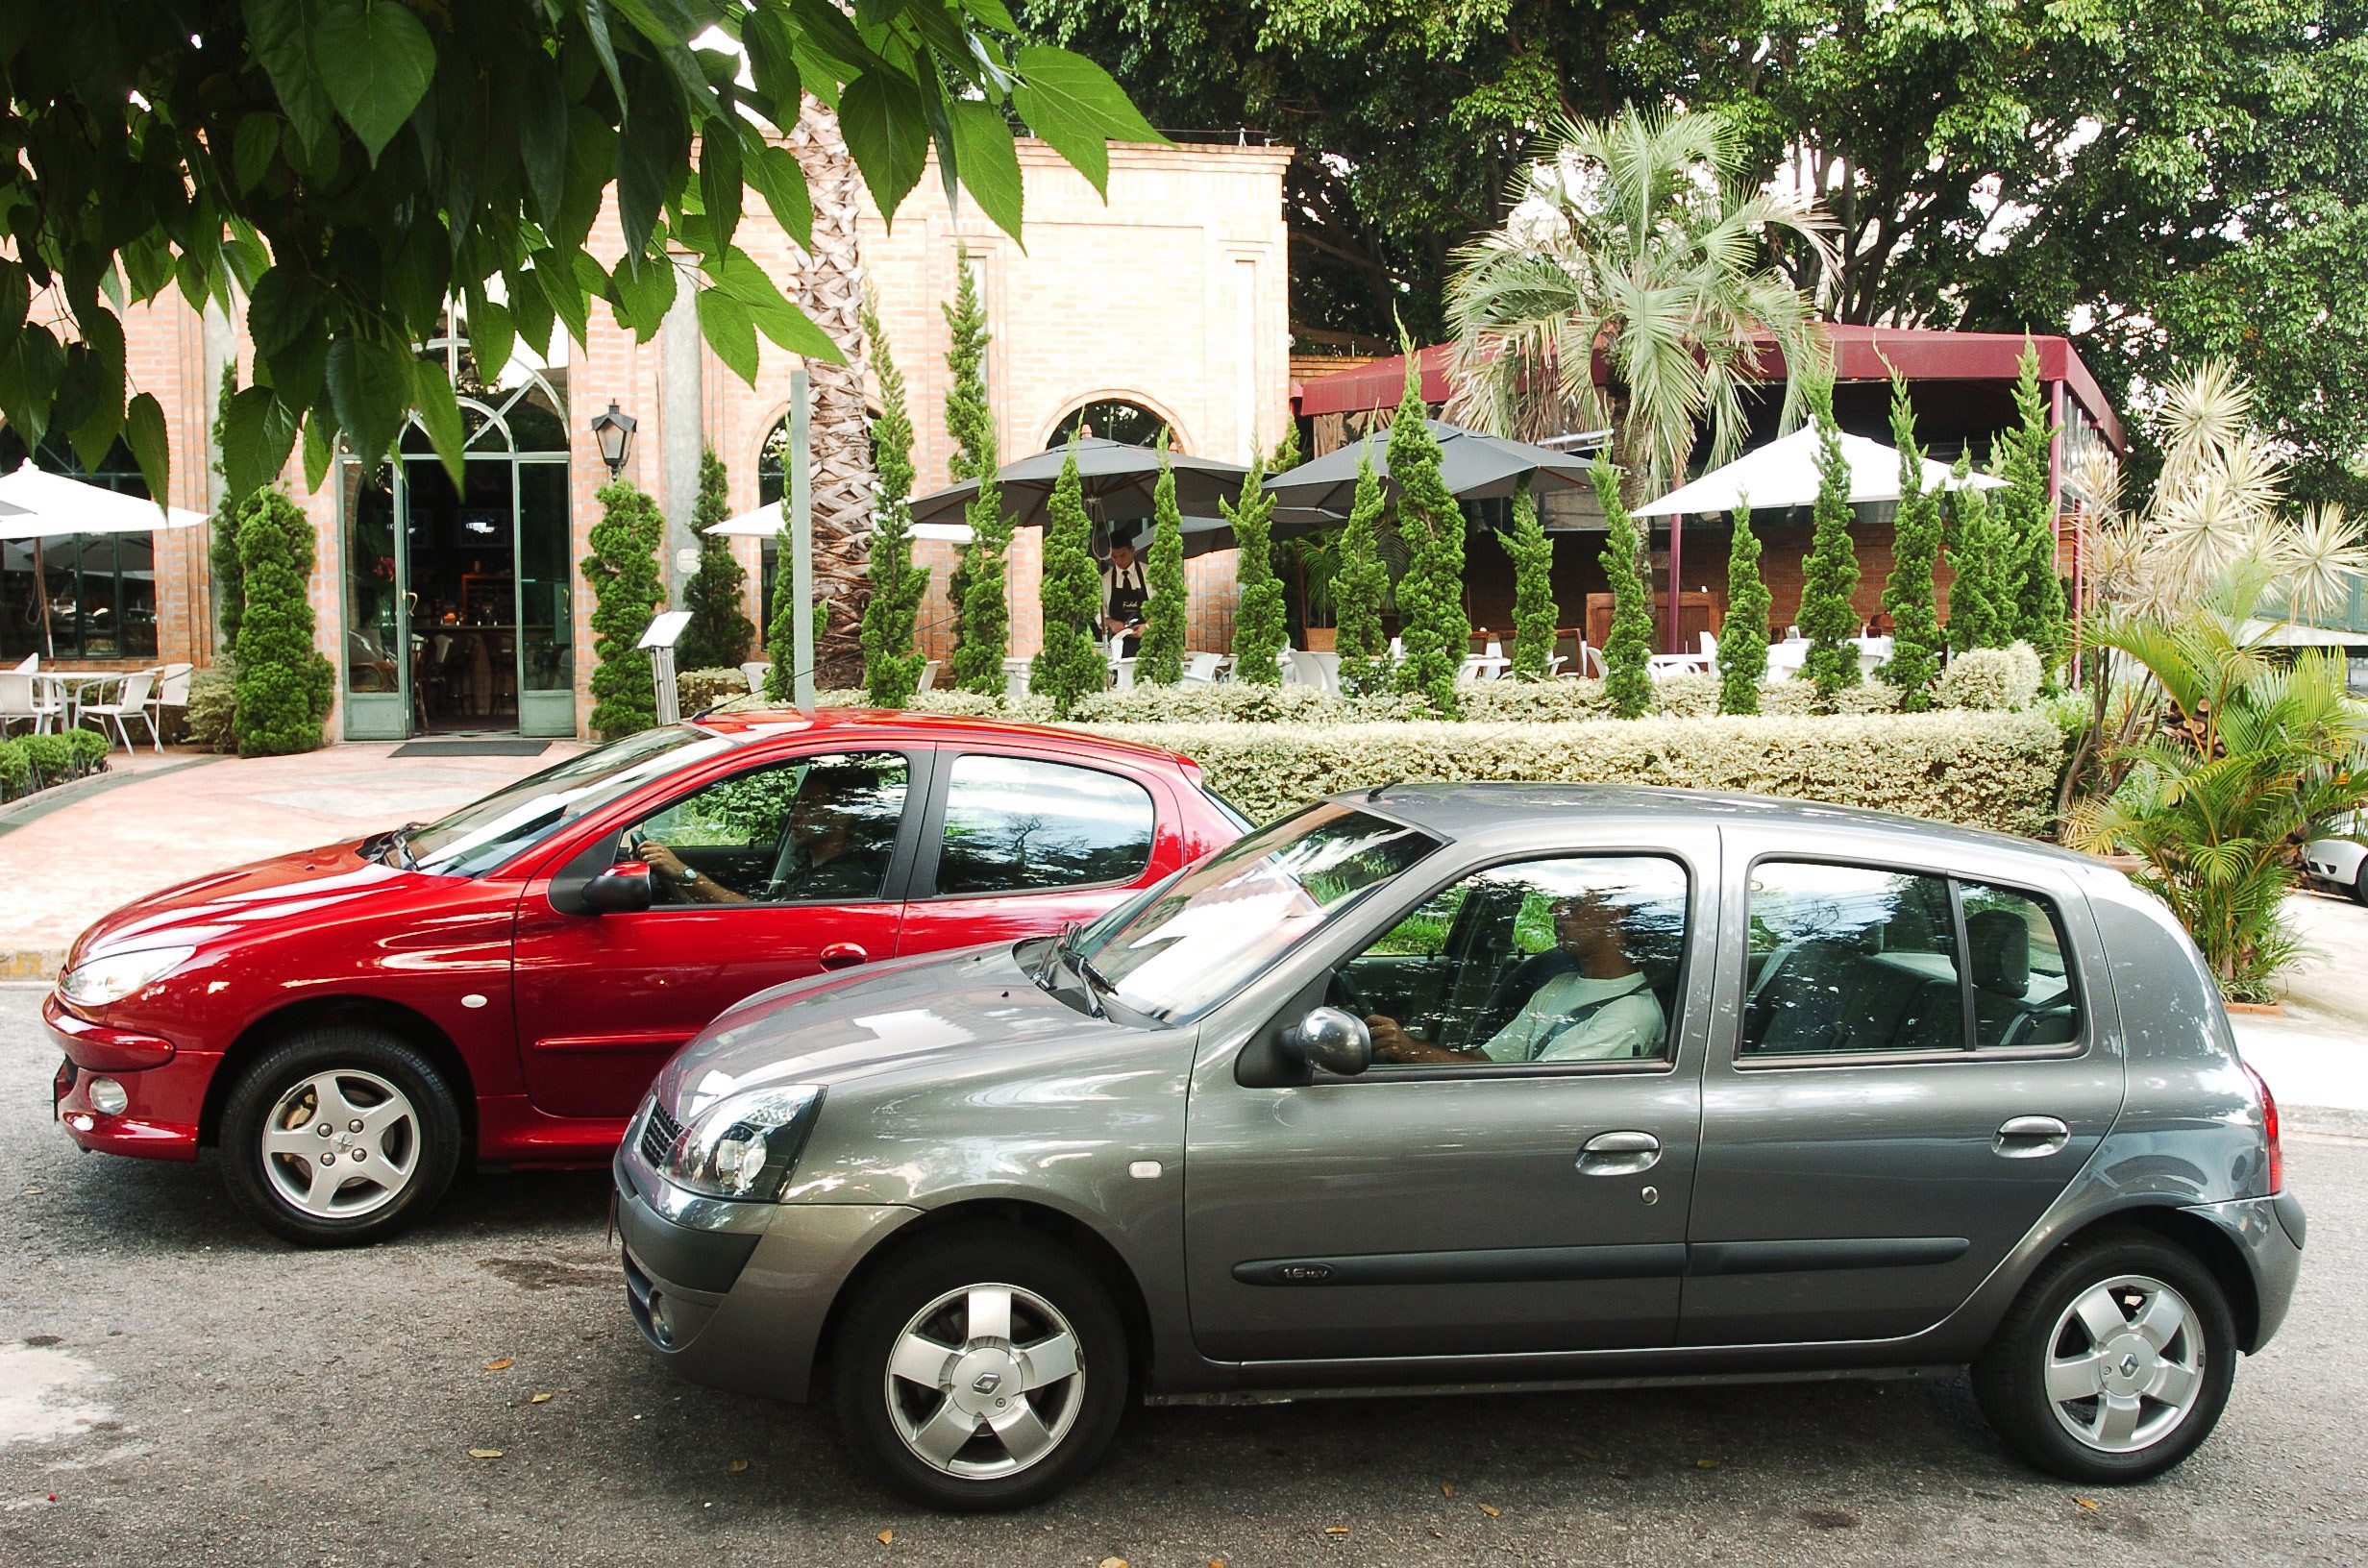 Teste comparativo entre o 206 1.6 16V Flex Feline da Peugeot, e o Clio 1.6 16V Hi-flex Privilège da Renault, modelos 2005, testados pela revista Quatro Rodas.